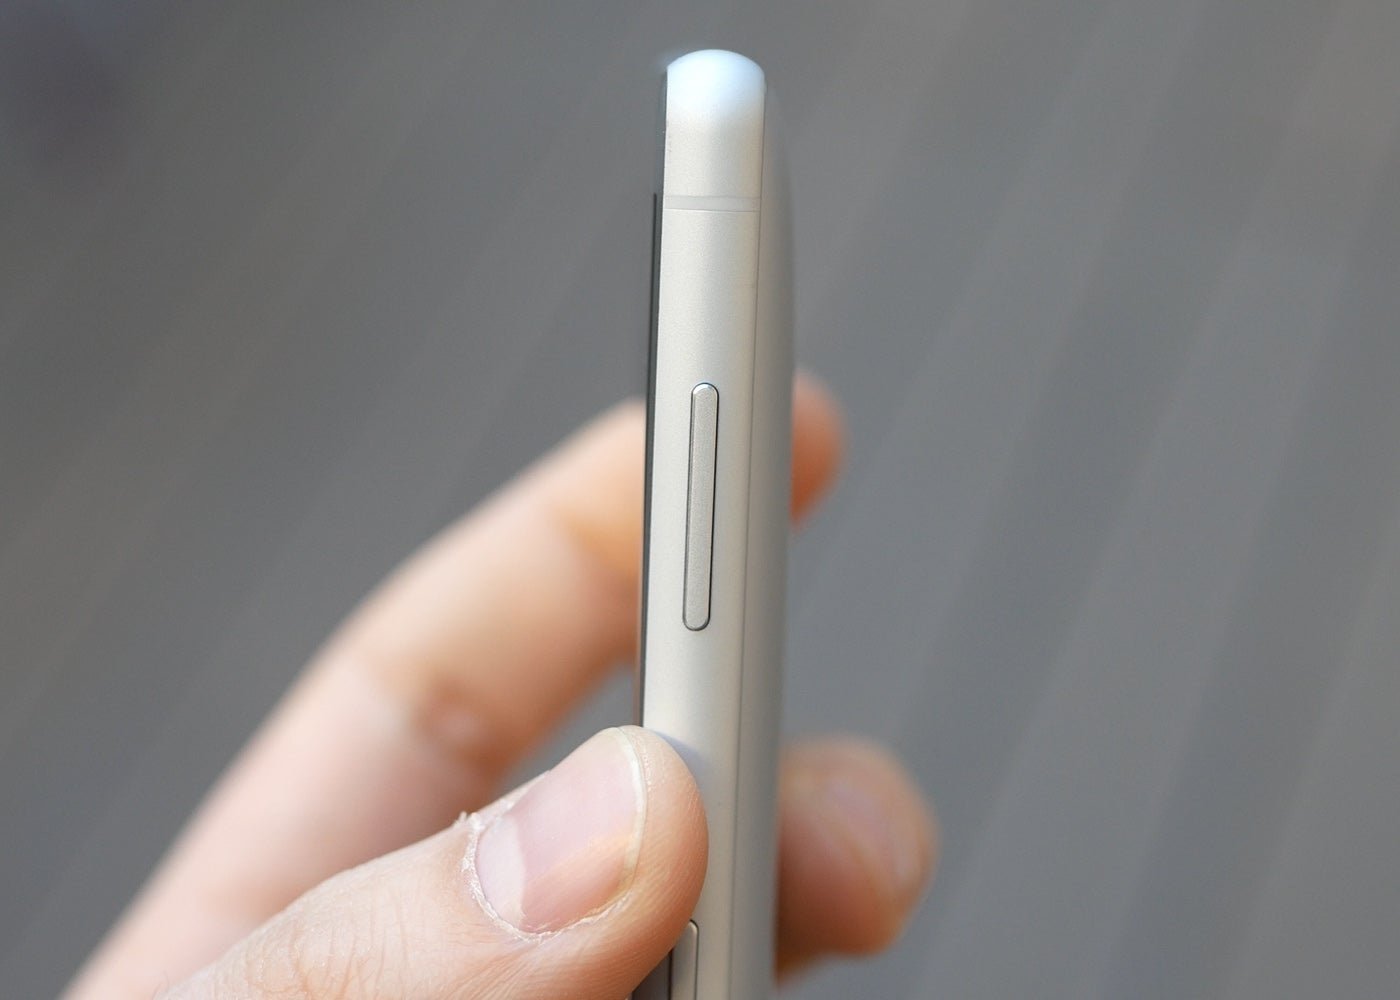 Nuevo Sony Xperia XZ2 Compact: precio y características del teléfono compacto más potente